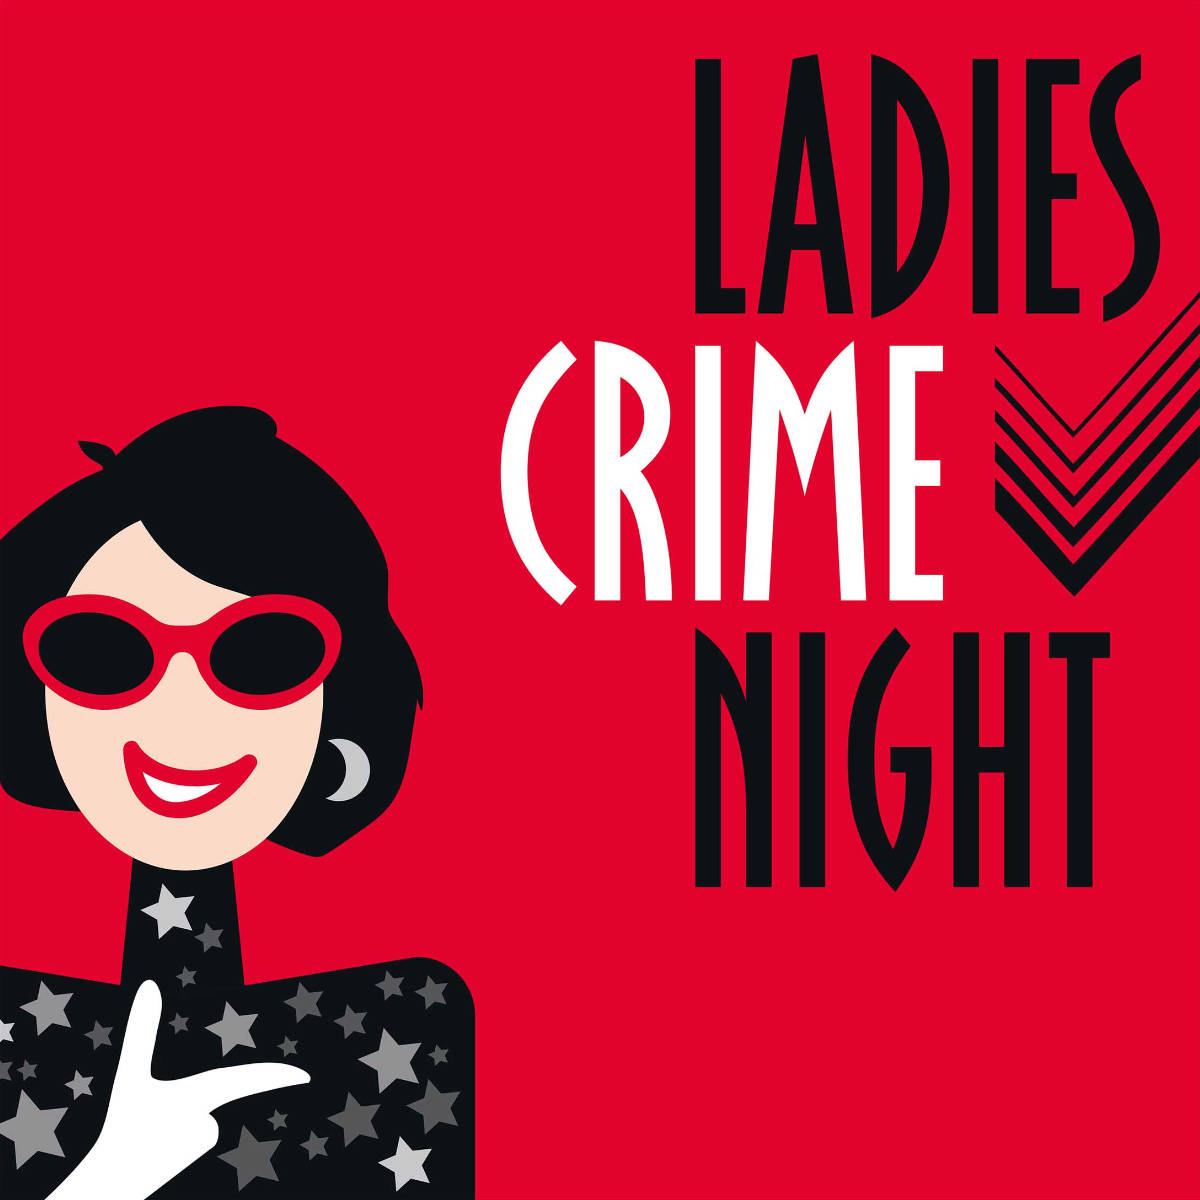 Bild von der Veranstaltung Ladies Crime Night im franz.K Reutlingen